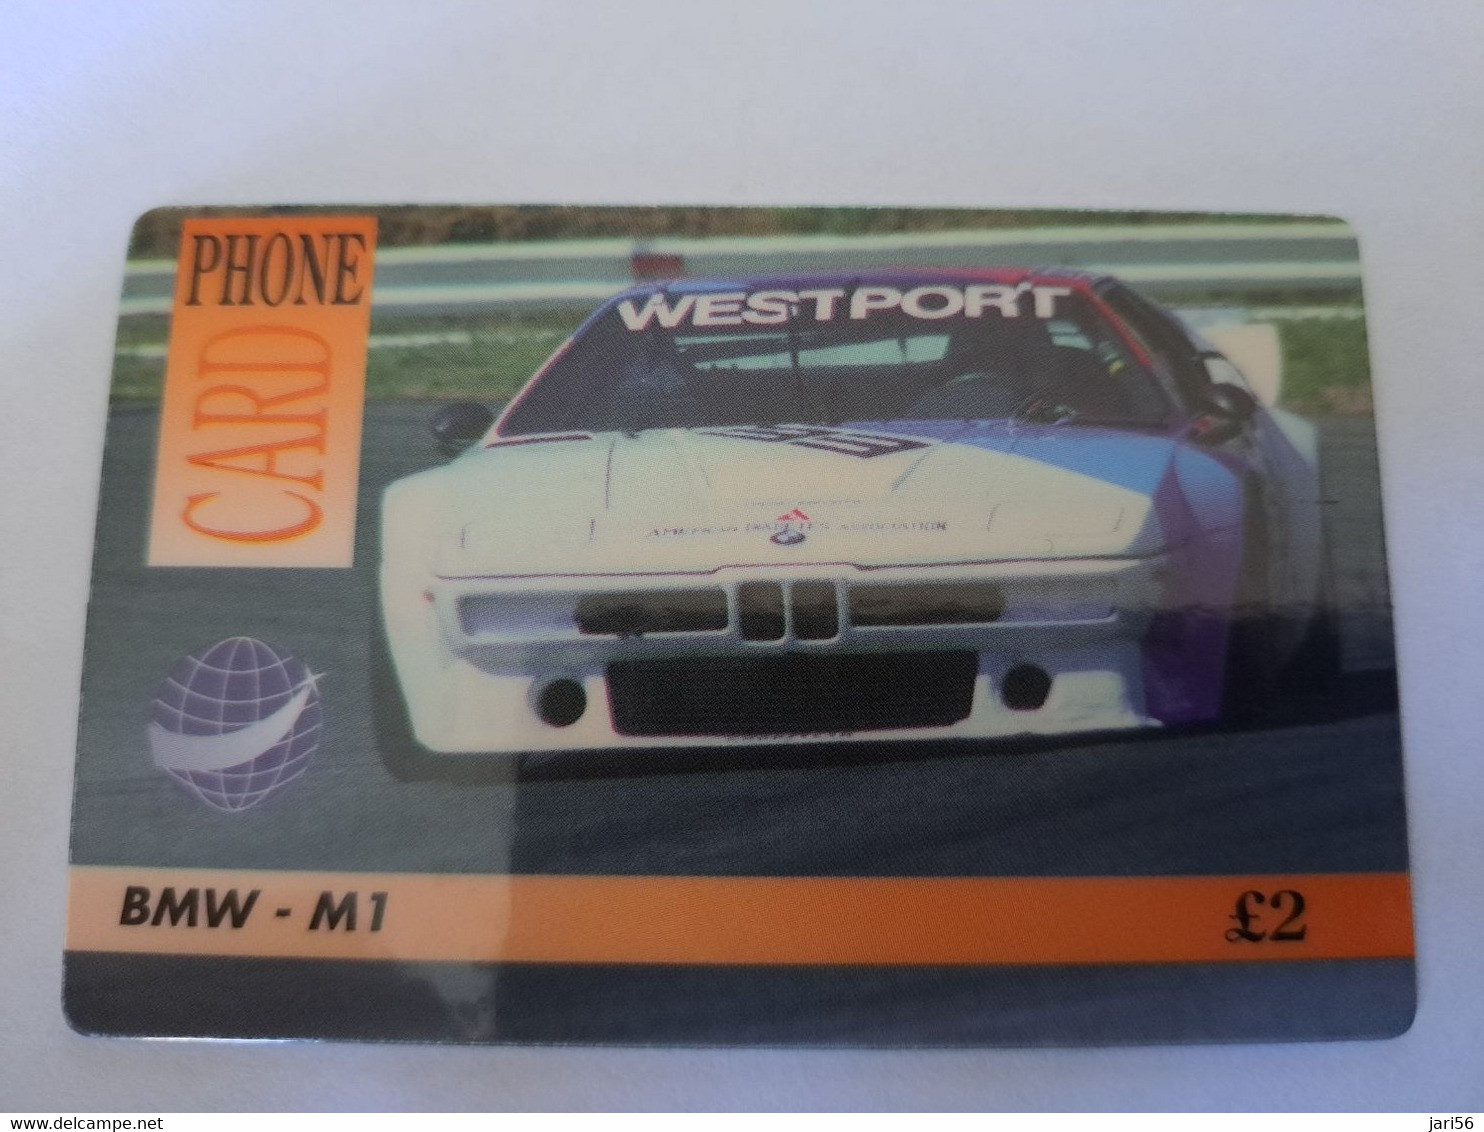 GREAT BRITAIN   2 POUND  /  BMW - M1  AUTO/CAR /RACE  /    DIT PHONECARD    PREPAID CARD      **12126** - [10] Sammlungen